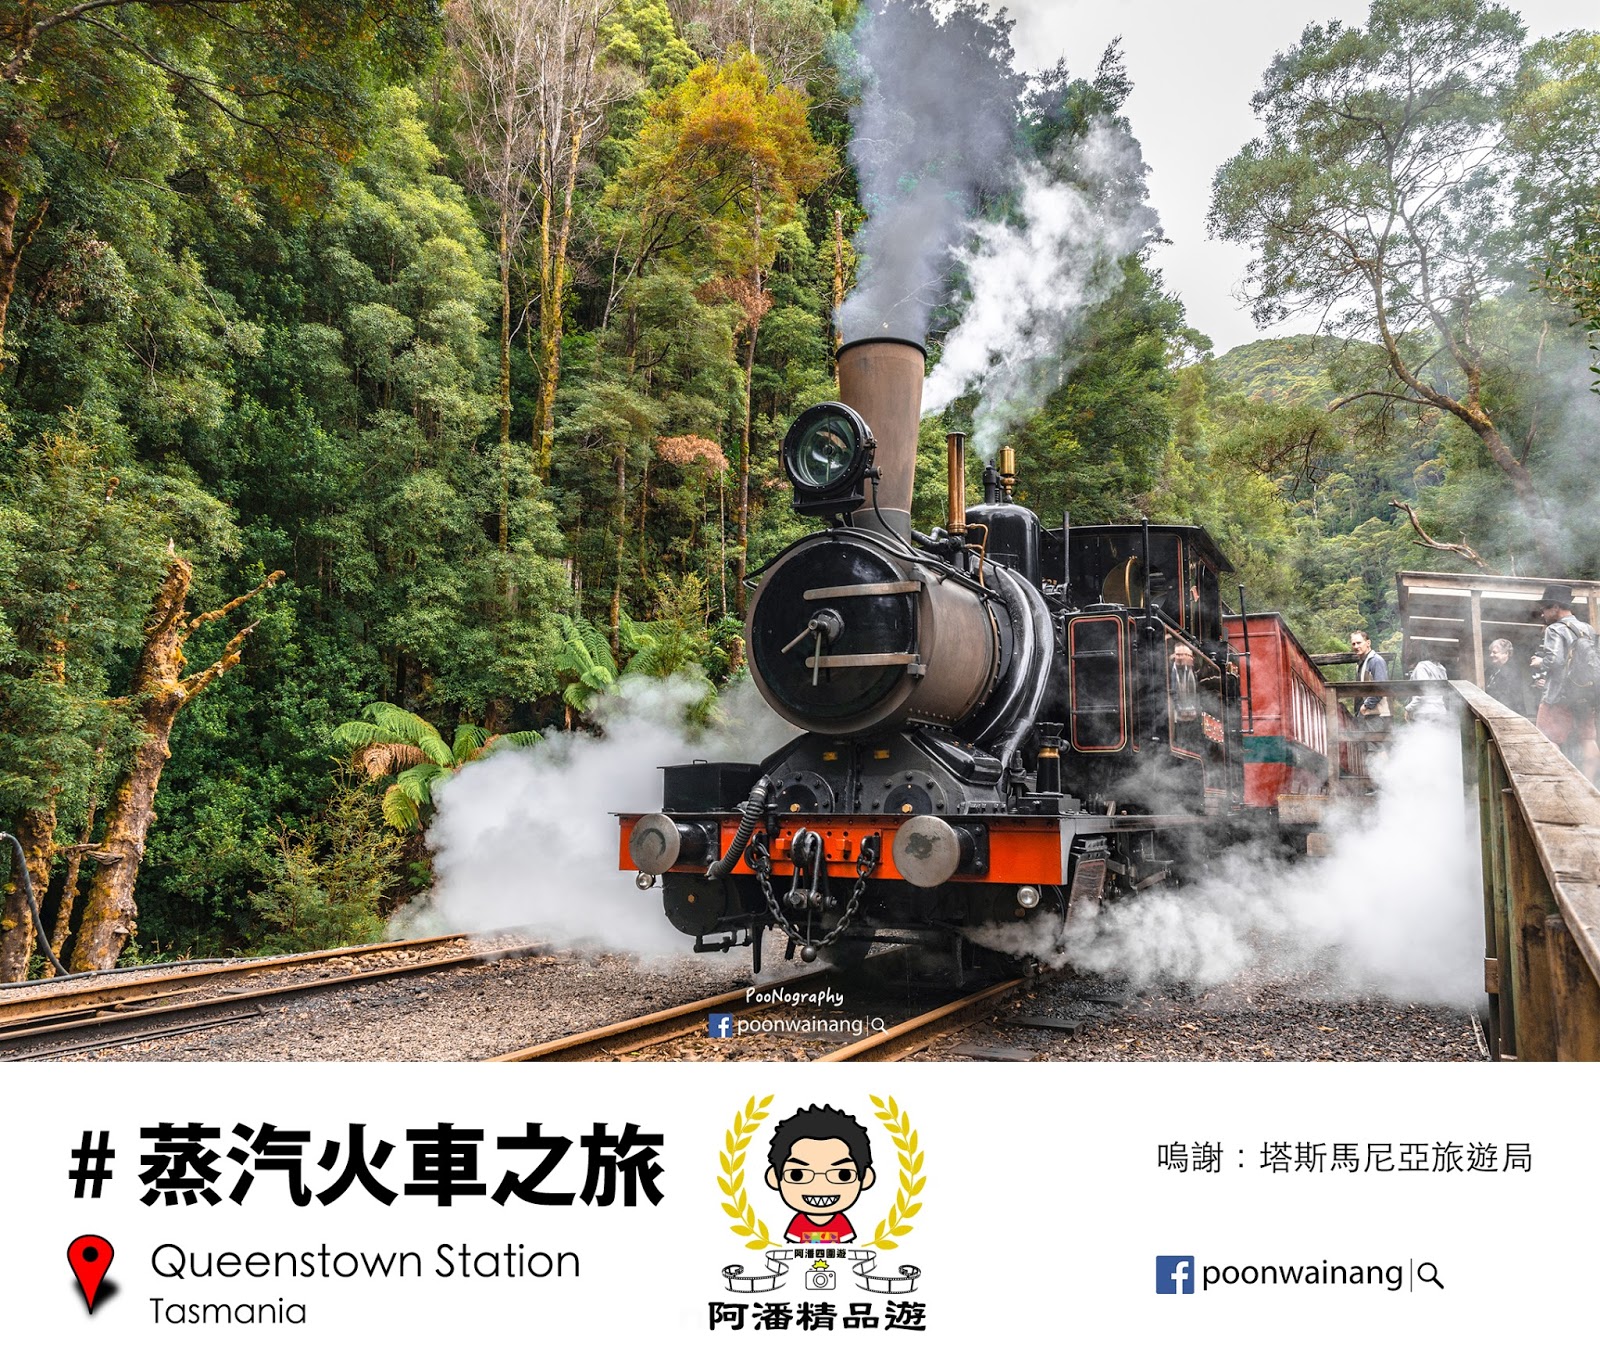 雙體驗：蒸汽火車 X 兩輪車暢遊森林